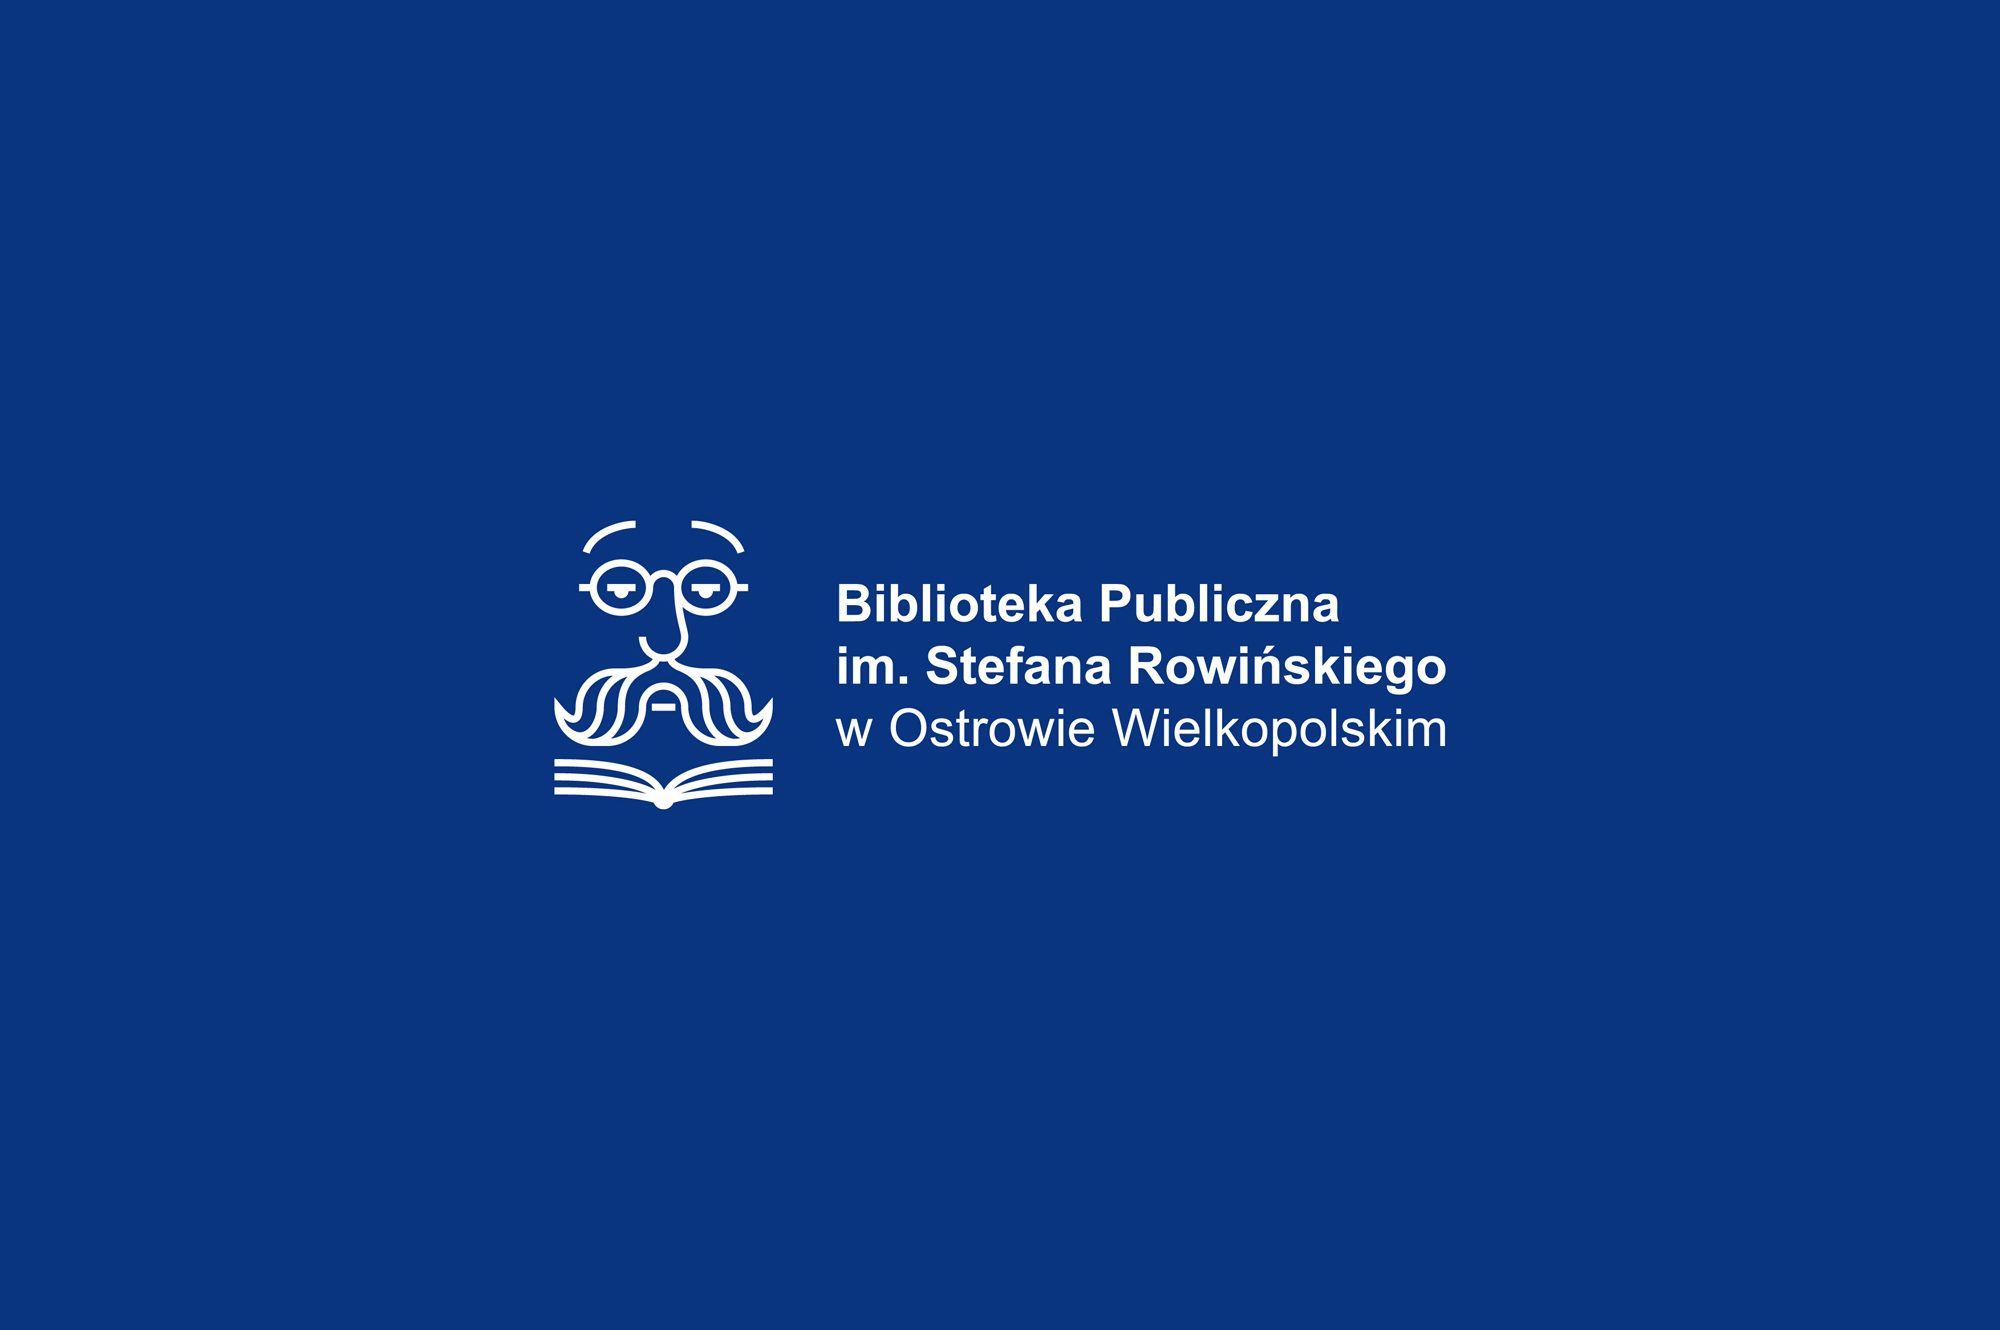 Biblioteka Publiczna - logo KOLOR BIAŁY